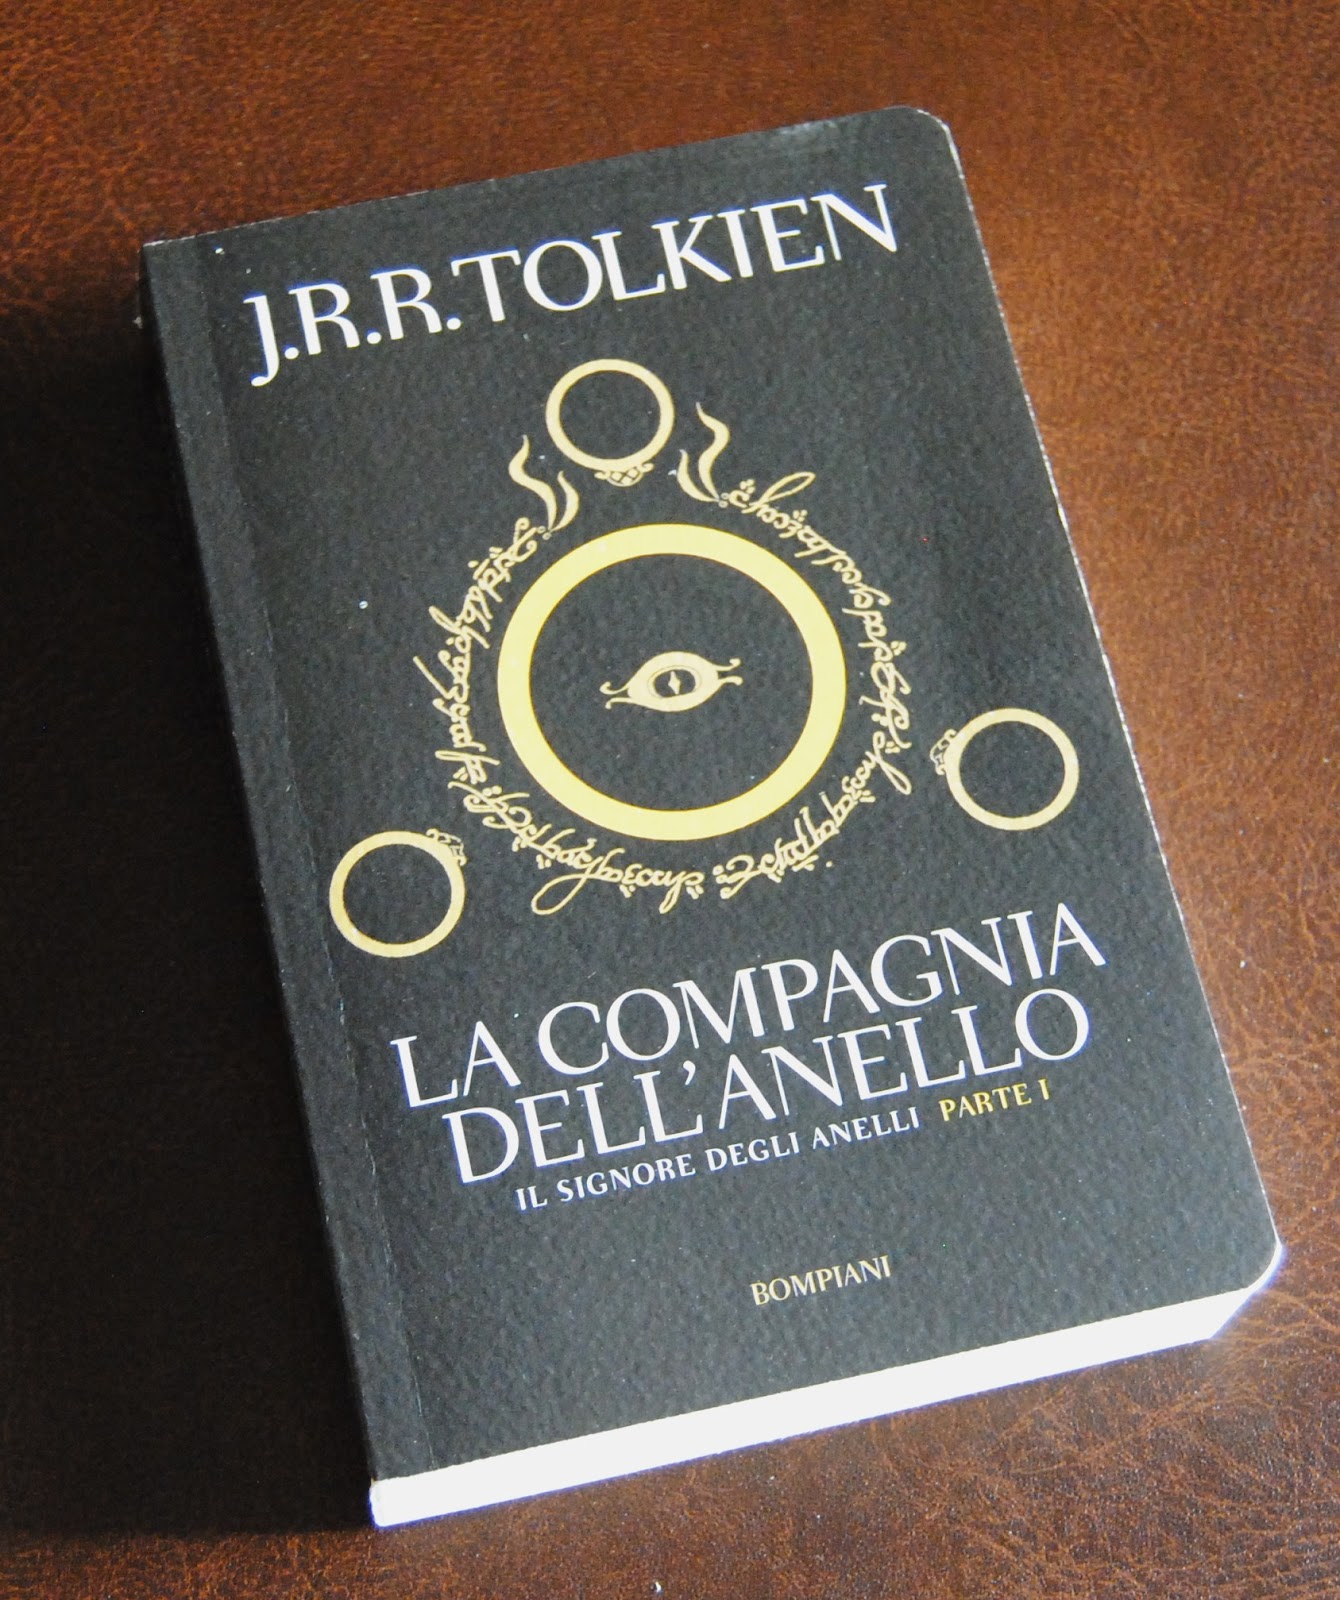 Tolkien collection Il Signore degli Anelli, nuova edizione italiana 2012